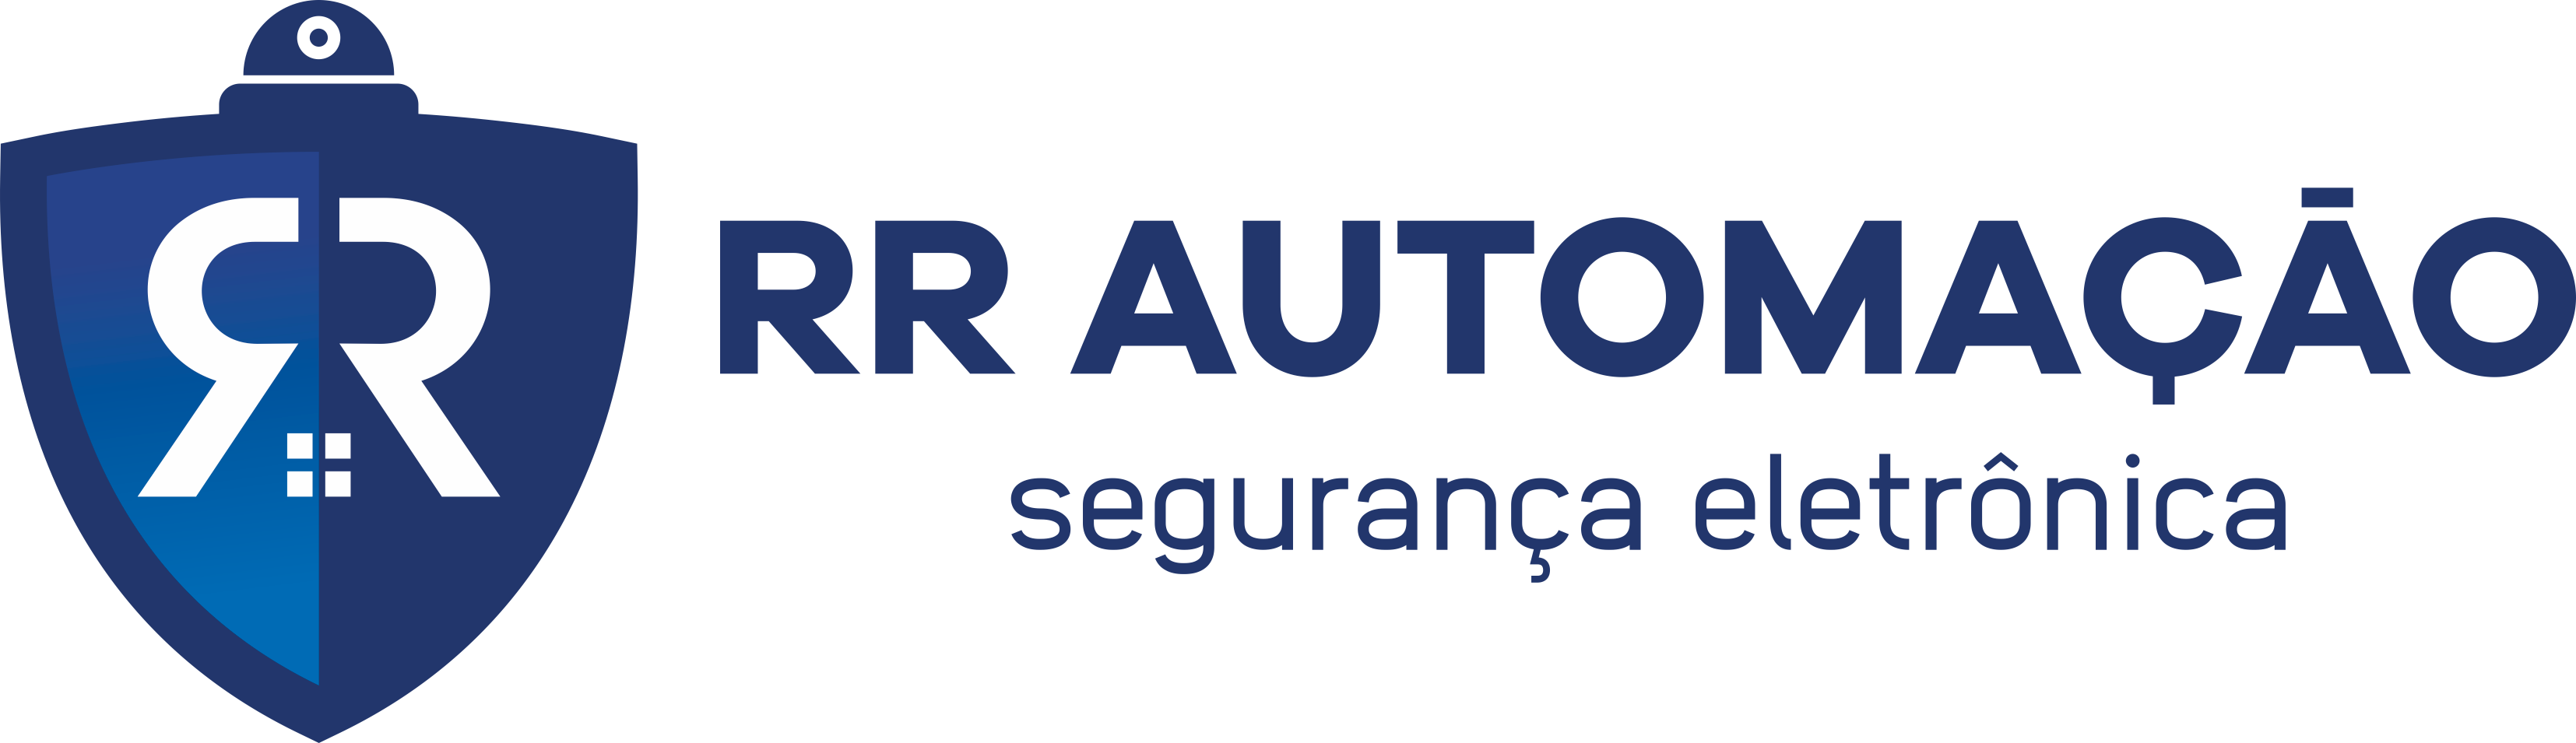 Logotipo-Horizontal-Colorido_RR-AUTOMAÇÃO